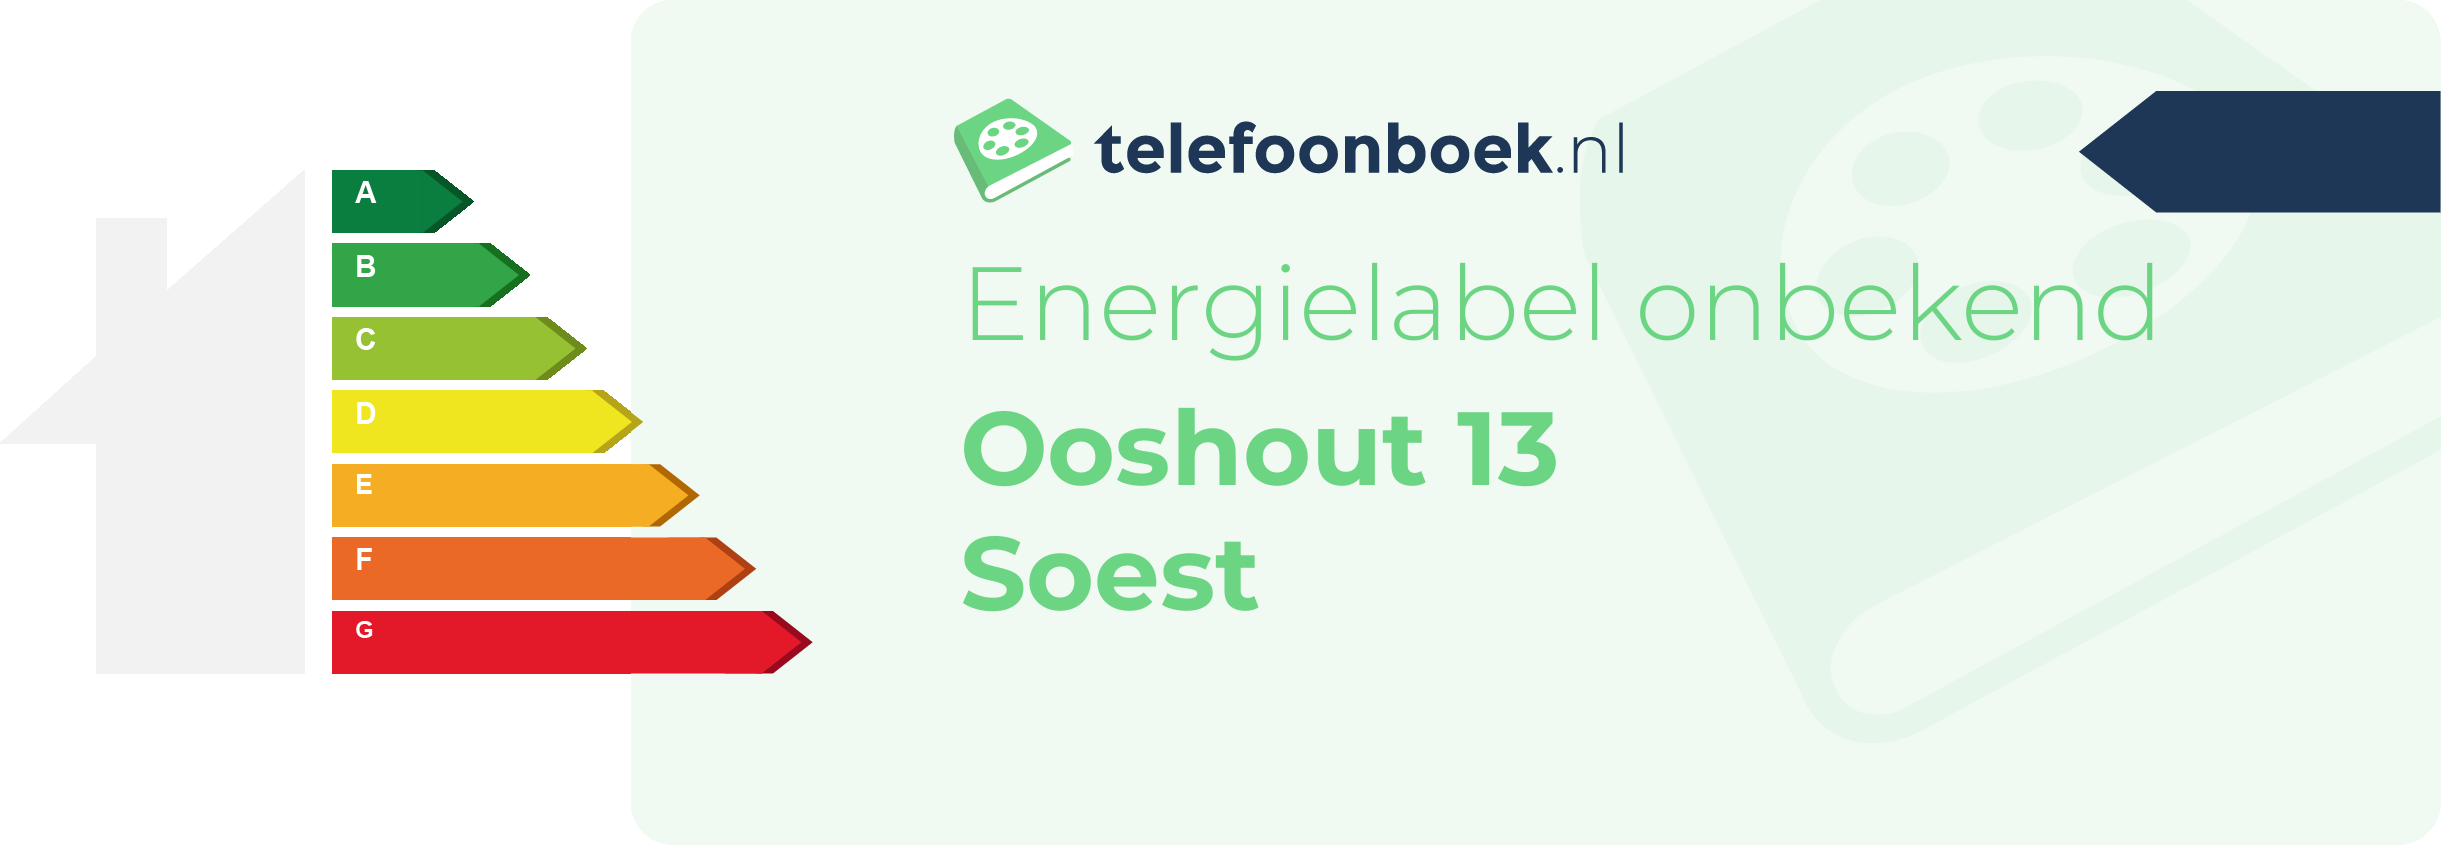 Energielabel Ooshout 13 Soest